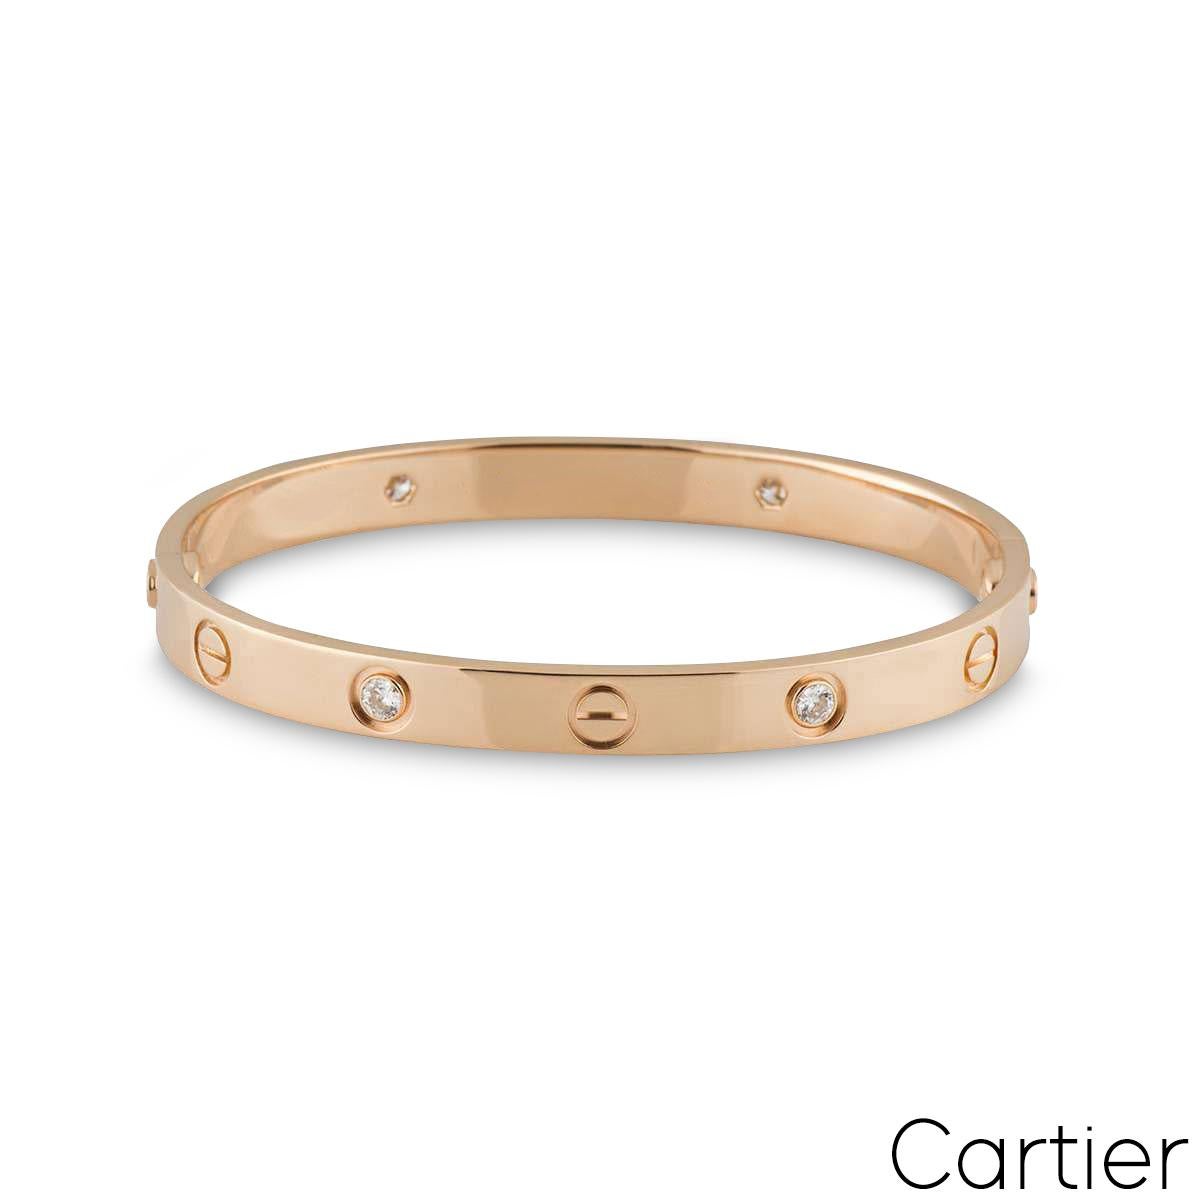 Ein Cartier-Armband aus 18 Karat Roségold mit einem halben Diamanten aus der Collection'S Love. Das ikonische Schraubenmotiv wechselt sich mit 4 runden Diamanten im Brillantschliff an der Außenkante des Armbands ab, die zusammen 0,42 ct. ergeben.